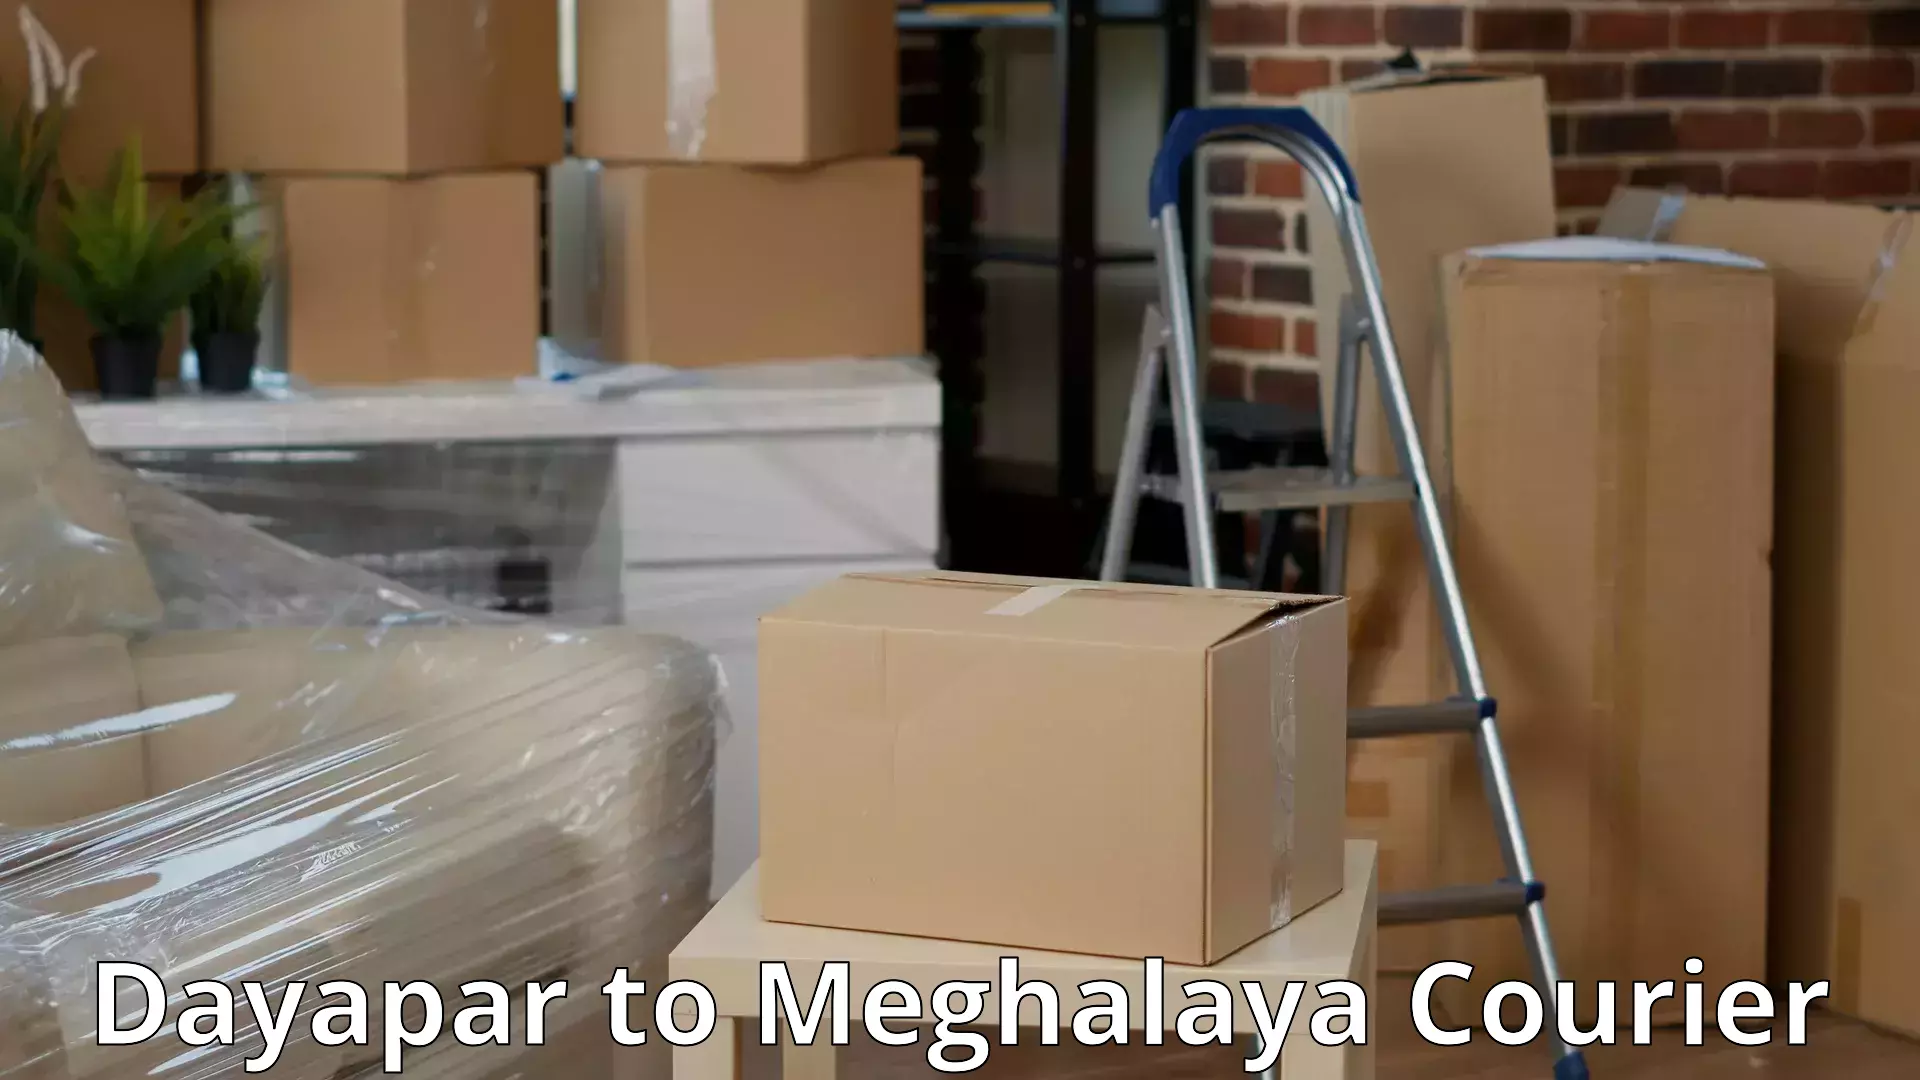 Furniture handling services Dayapar to Meghalaya